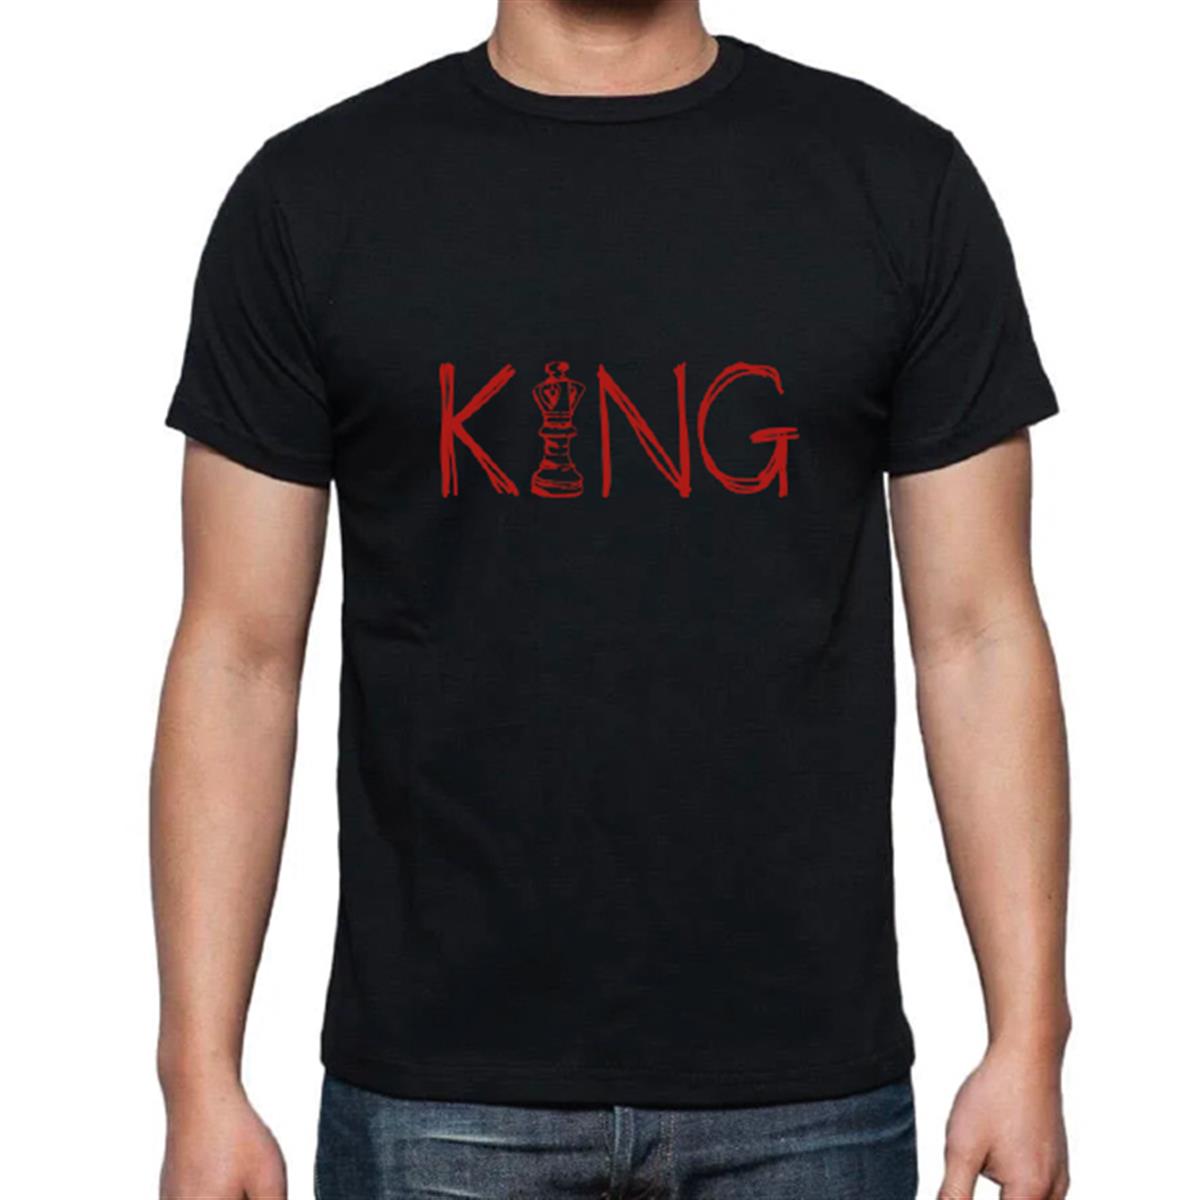 Kırmızı King tişört